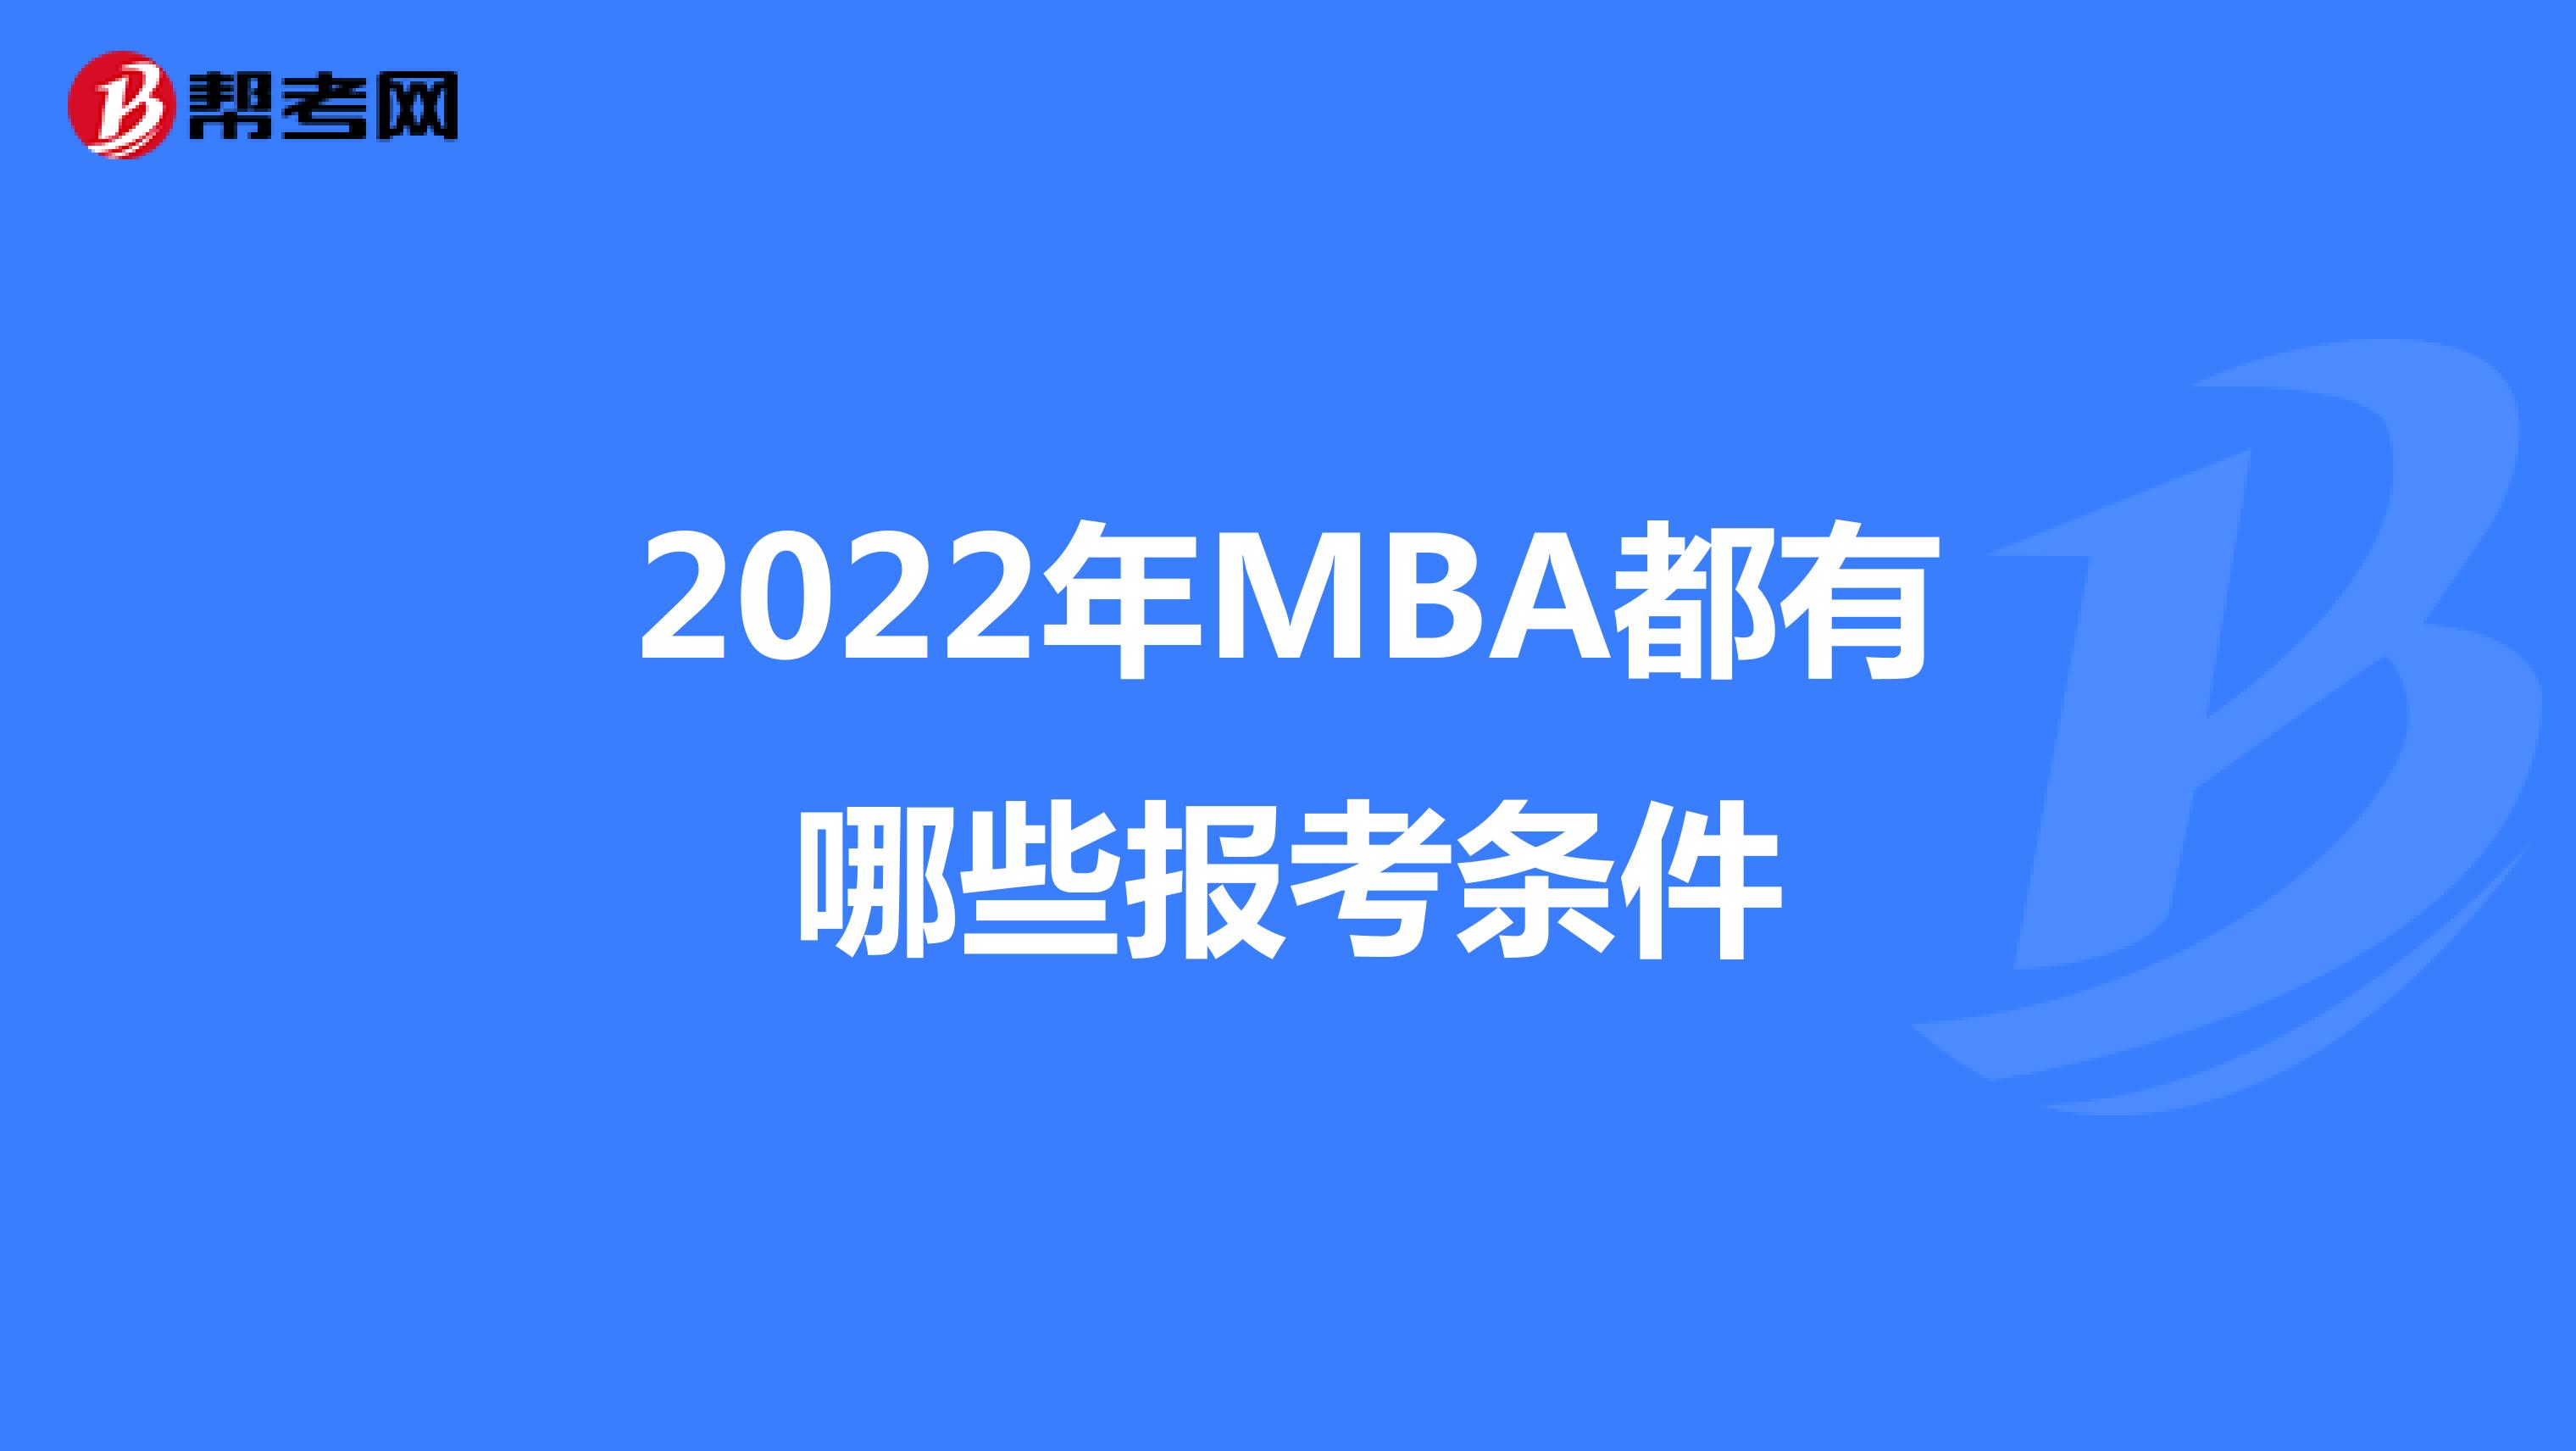  2022年MBA都有哪些报考条件